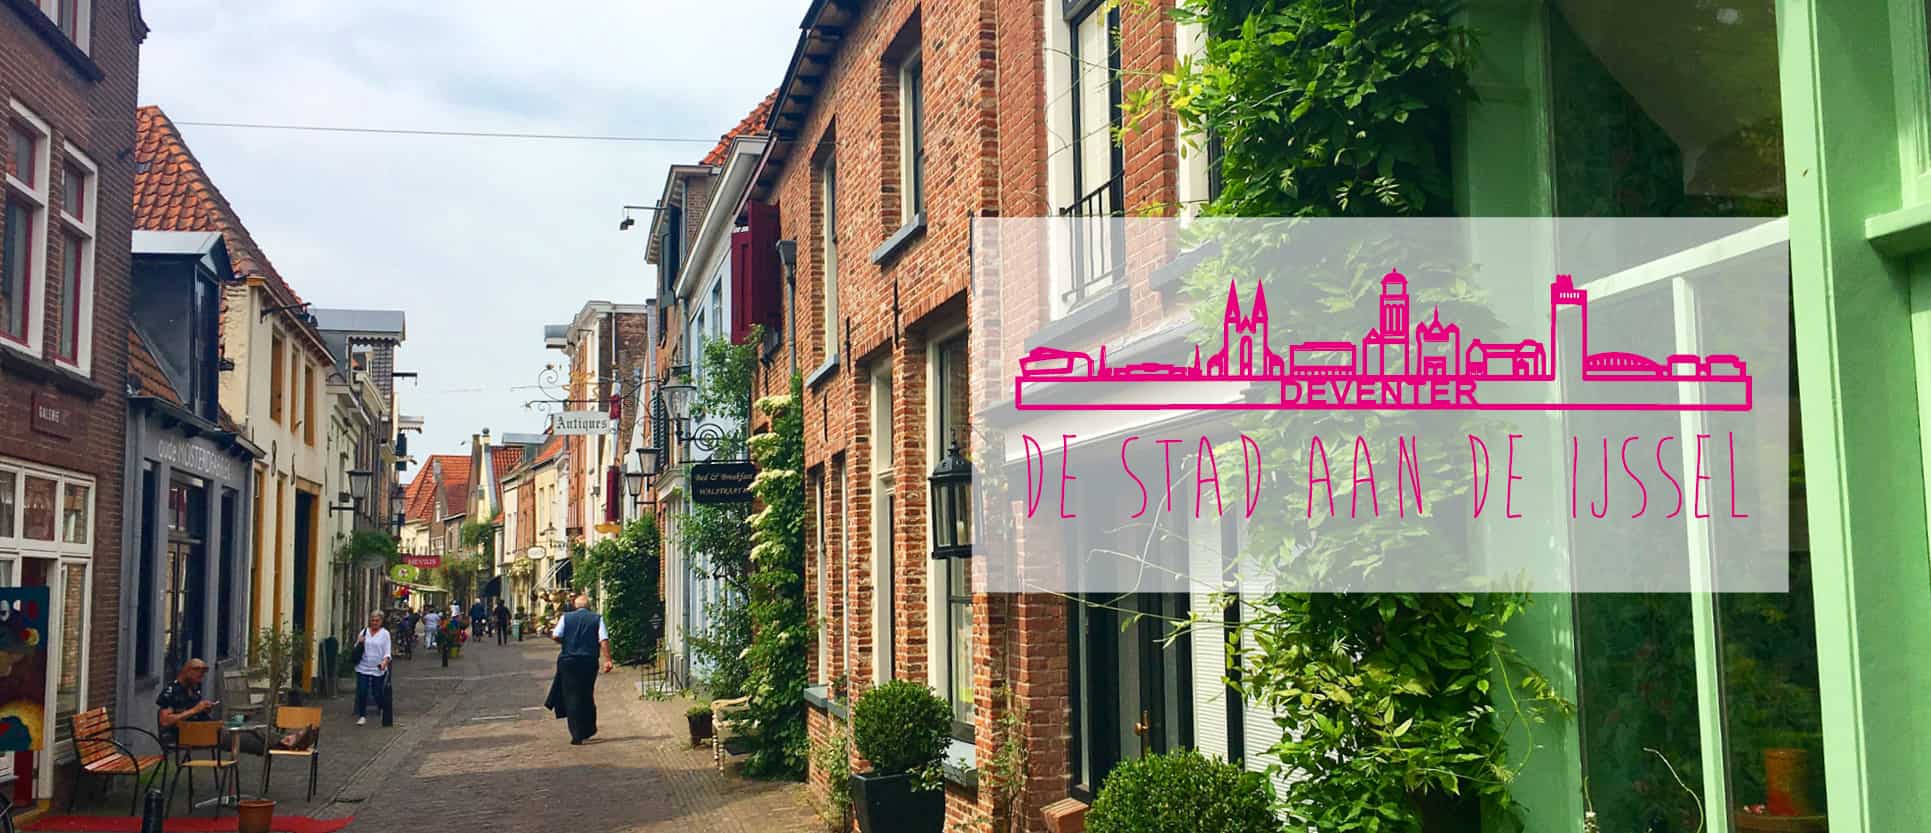 Stedentrip Deventer - Voordeeluitjes.nl - Vakantieblog